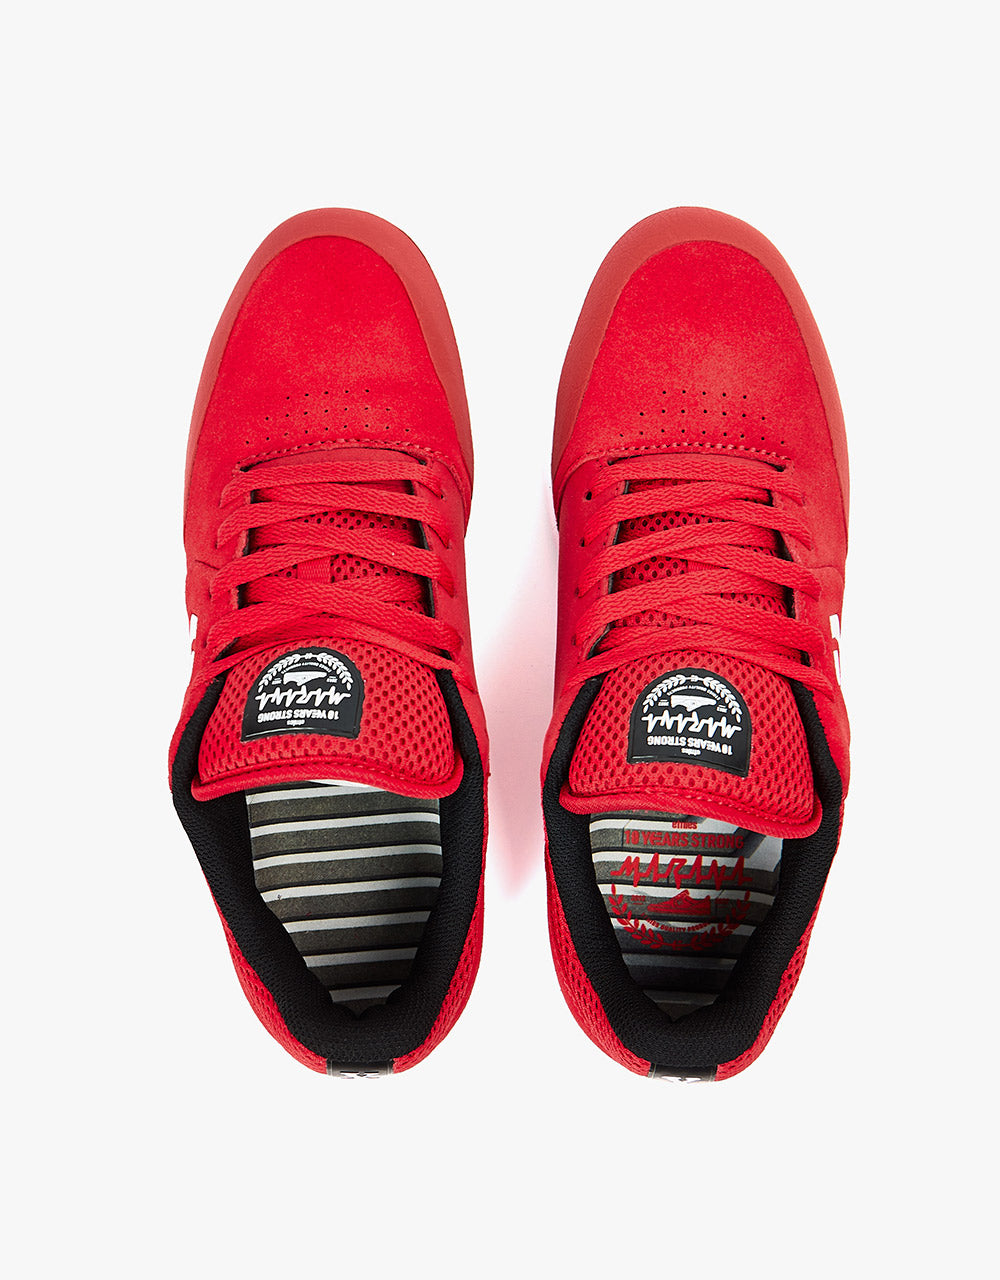 Etnies Marana OG Skate Shoes - Red